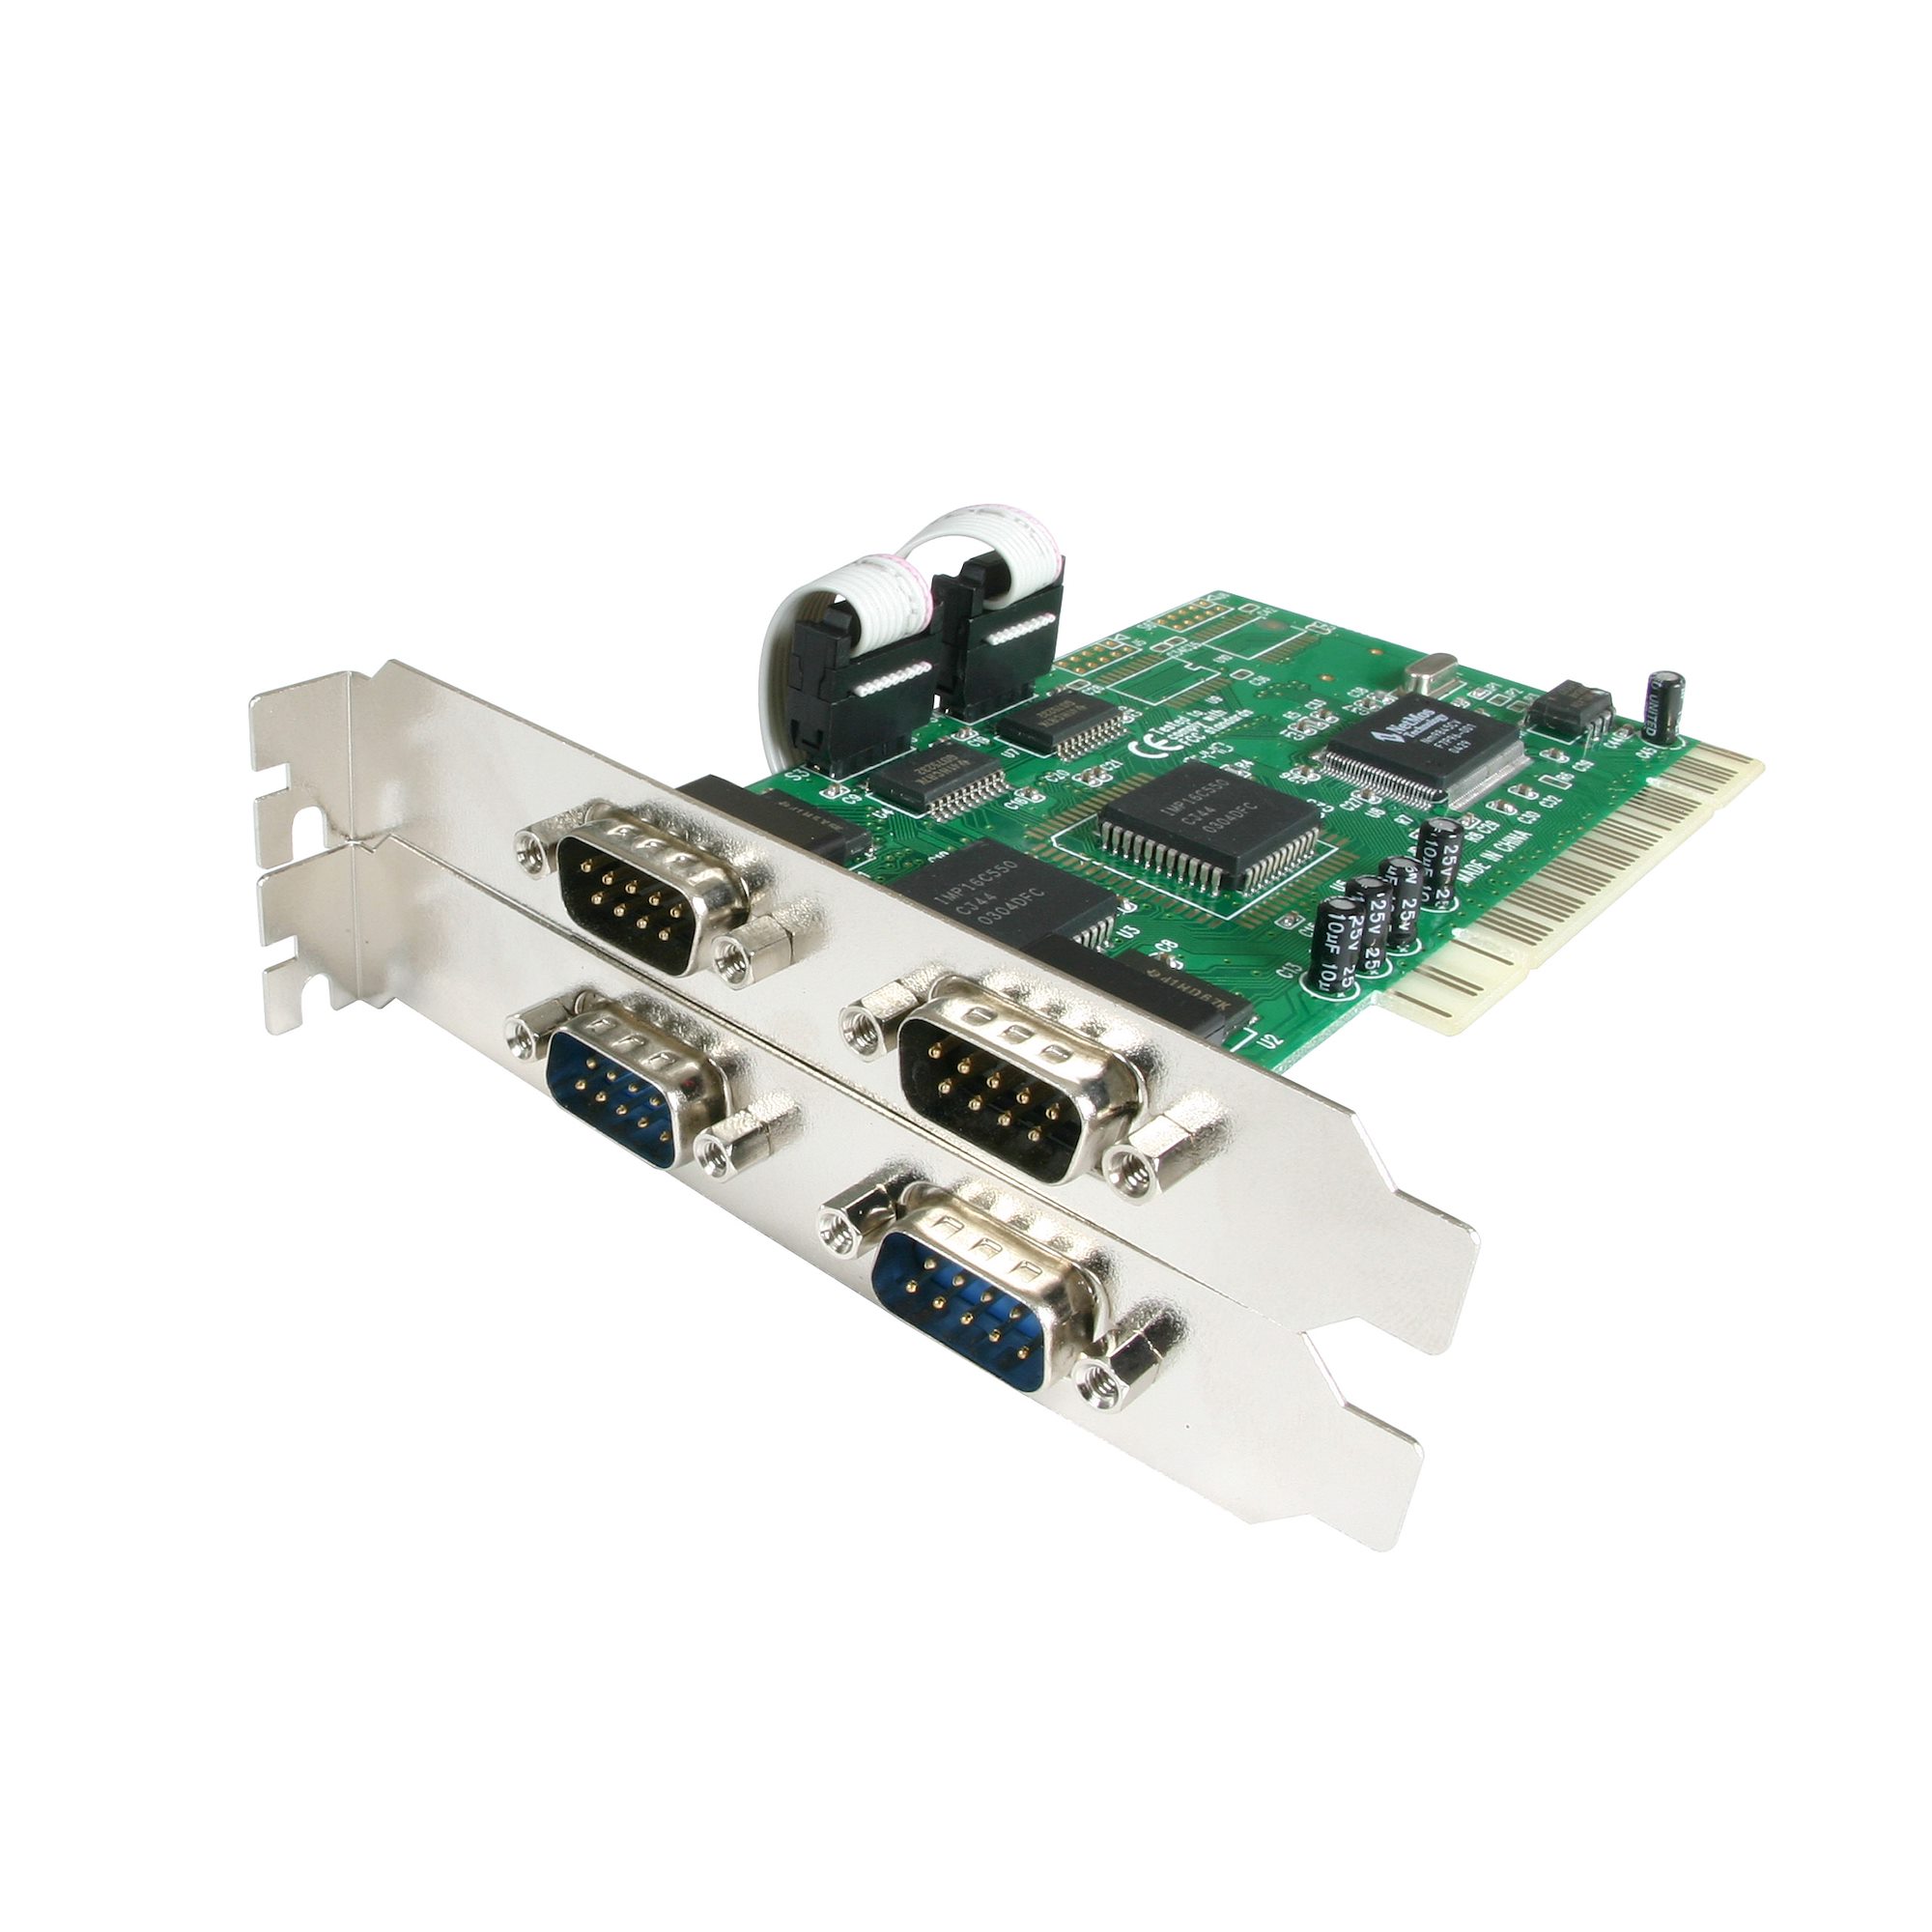 アイ・オー・データ PCIバス専用 RS-232C拡張インターフェイスボード4ポート 日本メーカー RSA-PCI4P4